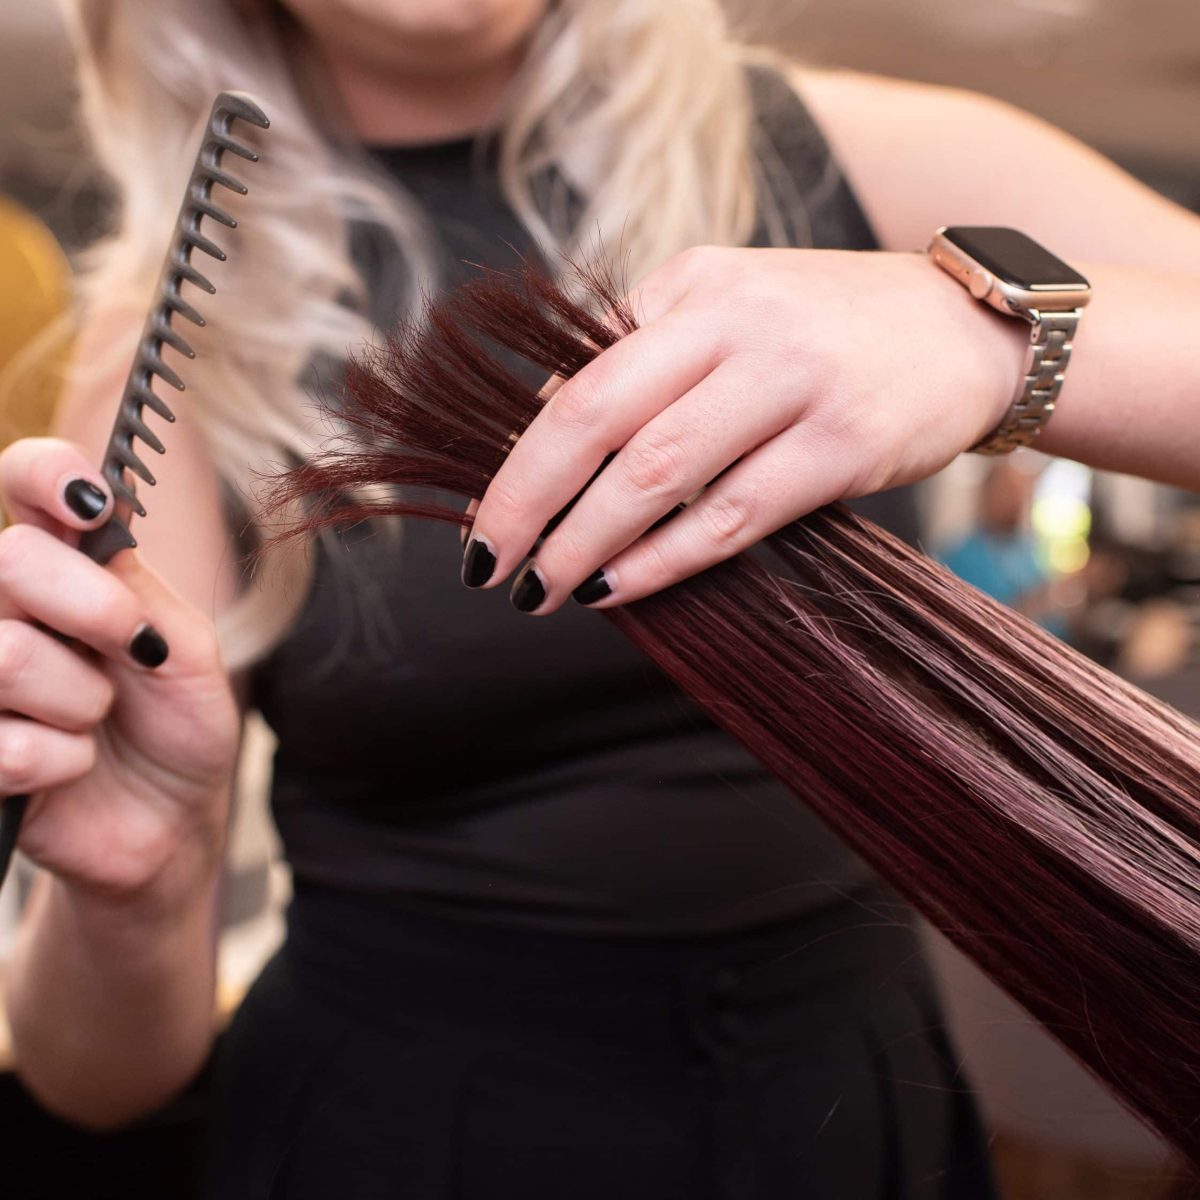 Hairstylist cutting a client's hair